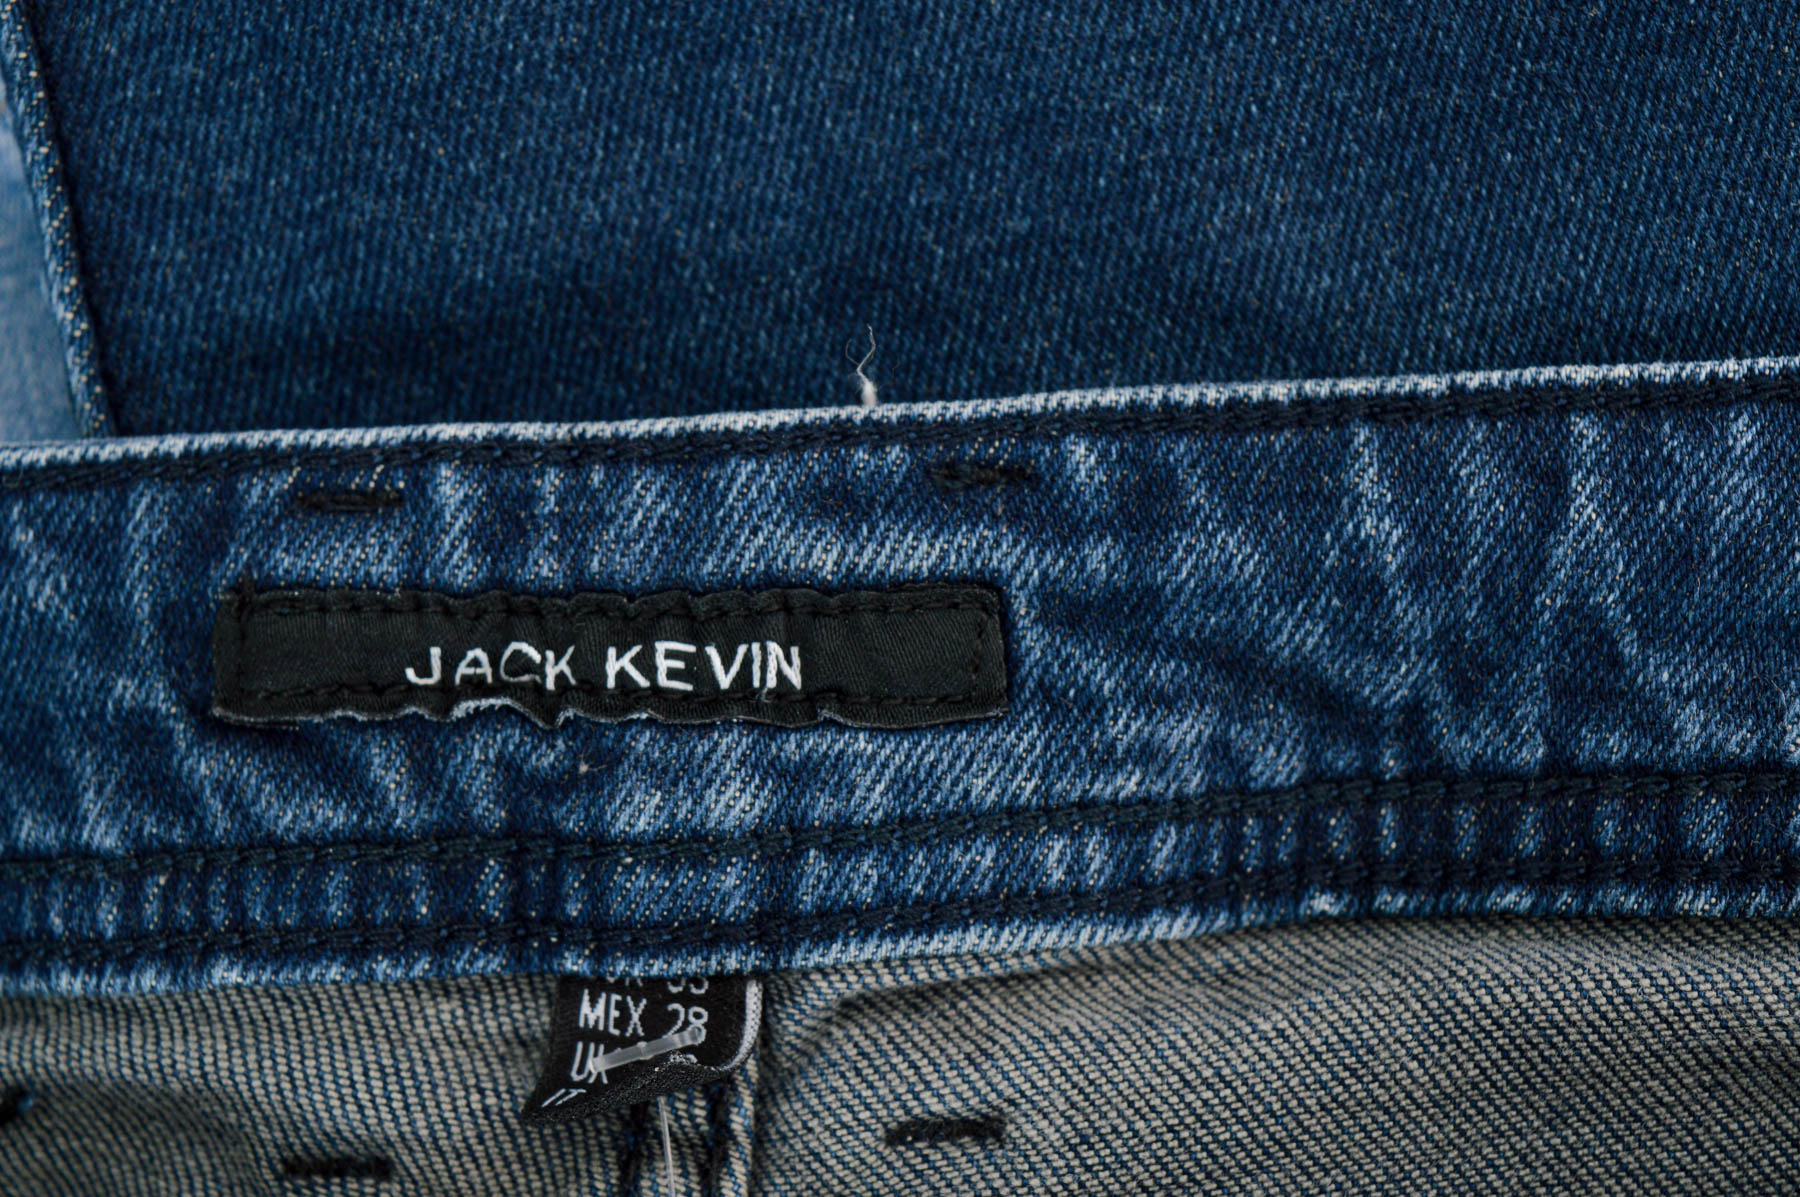 Men's jeans - Jack Kevin - 2